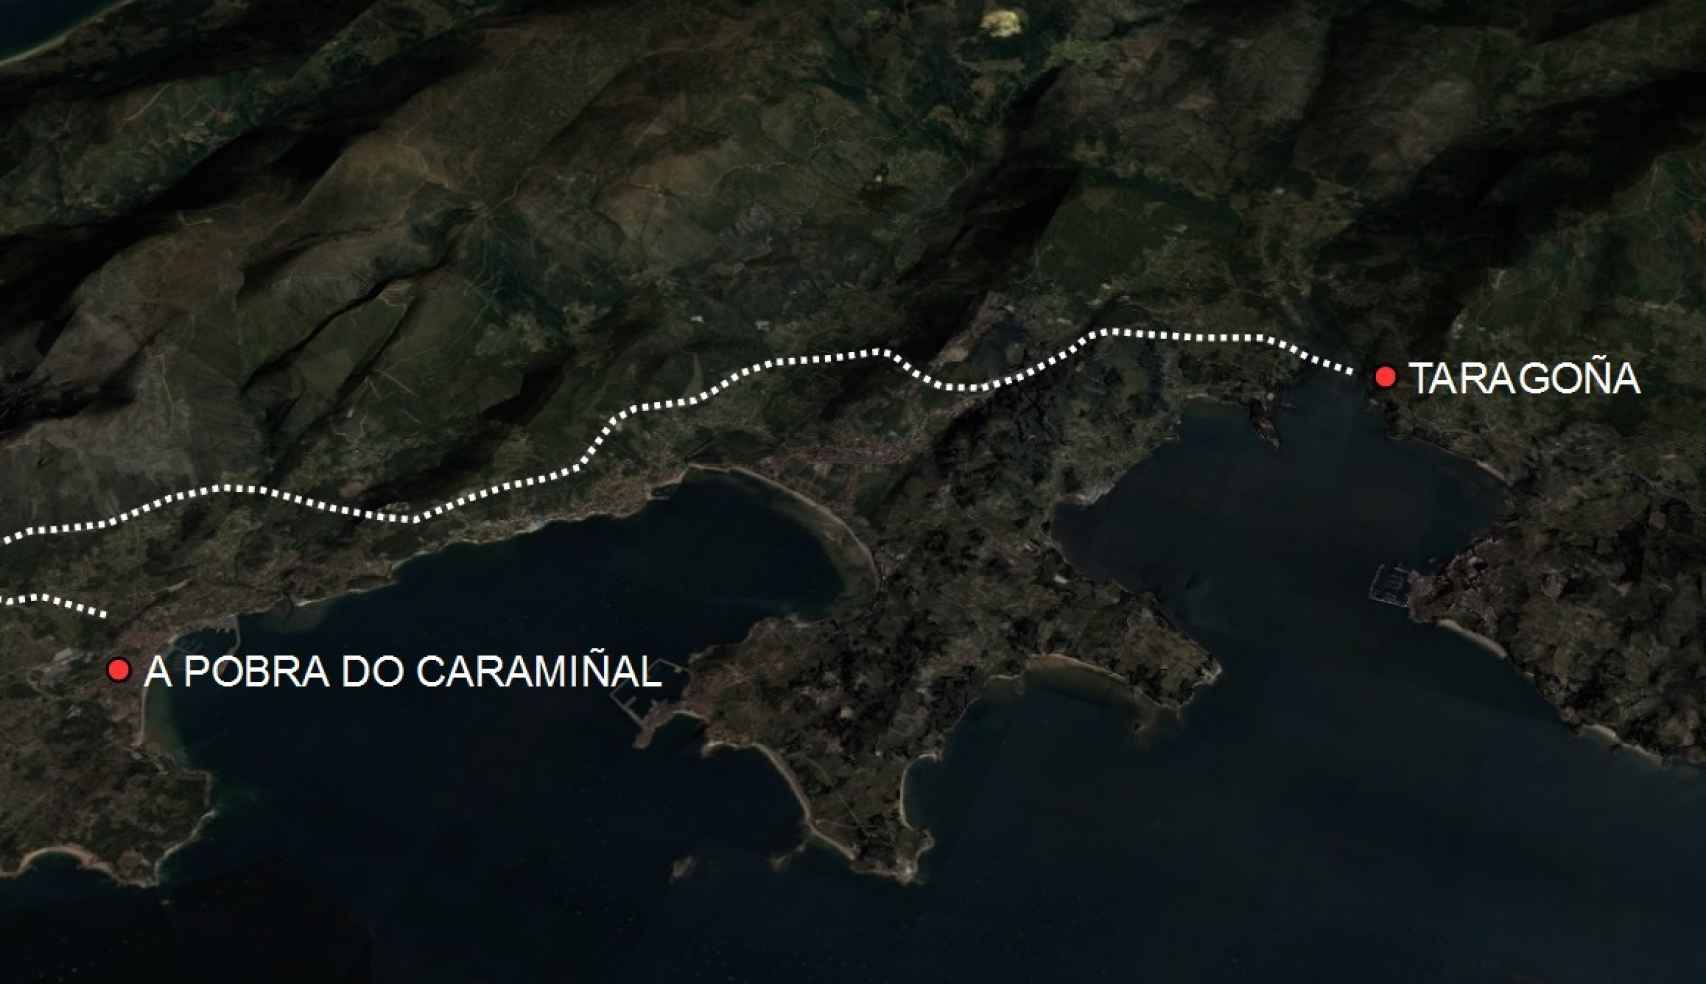 Entre A Pobra do Caramiñal y Taragoña hay veinte kilómetros de distancia.